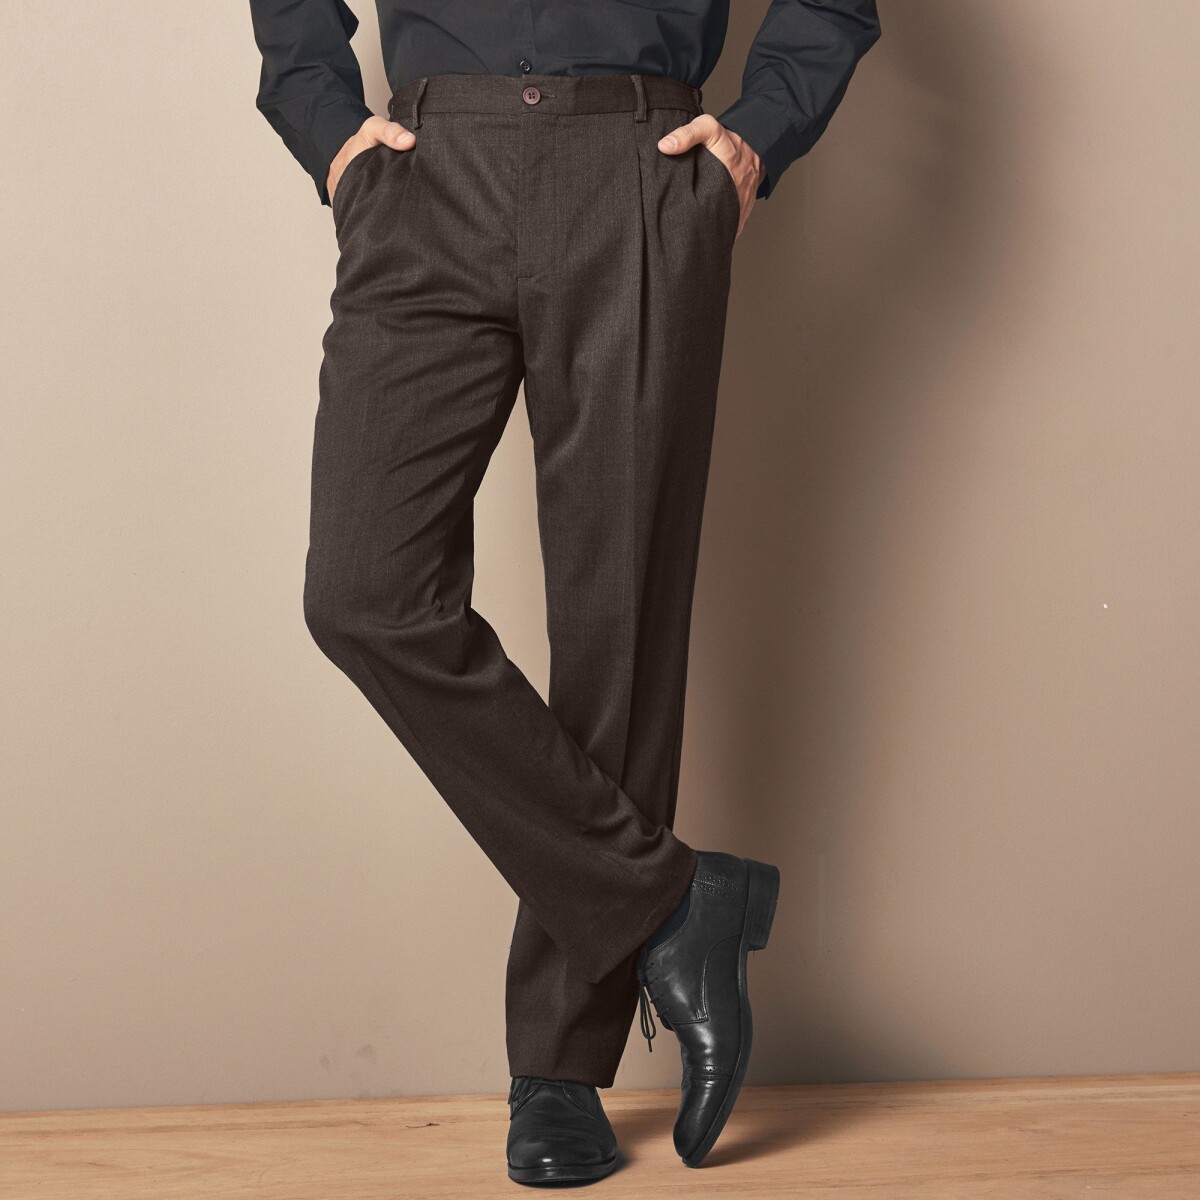 Nohavice s pružným pásom, polyester vlna oriešková 42